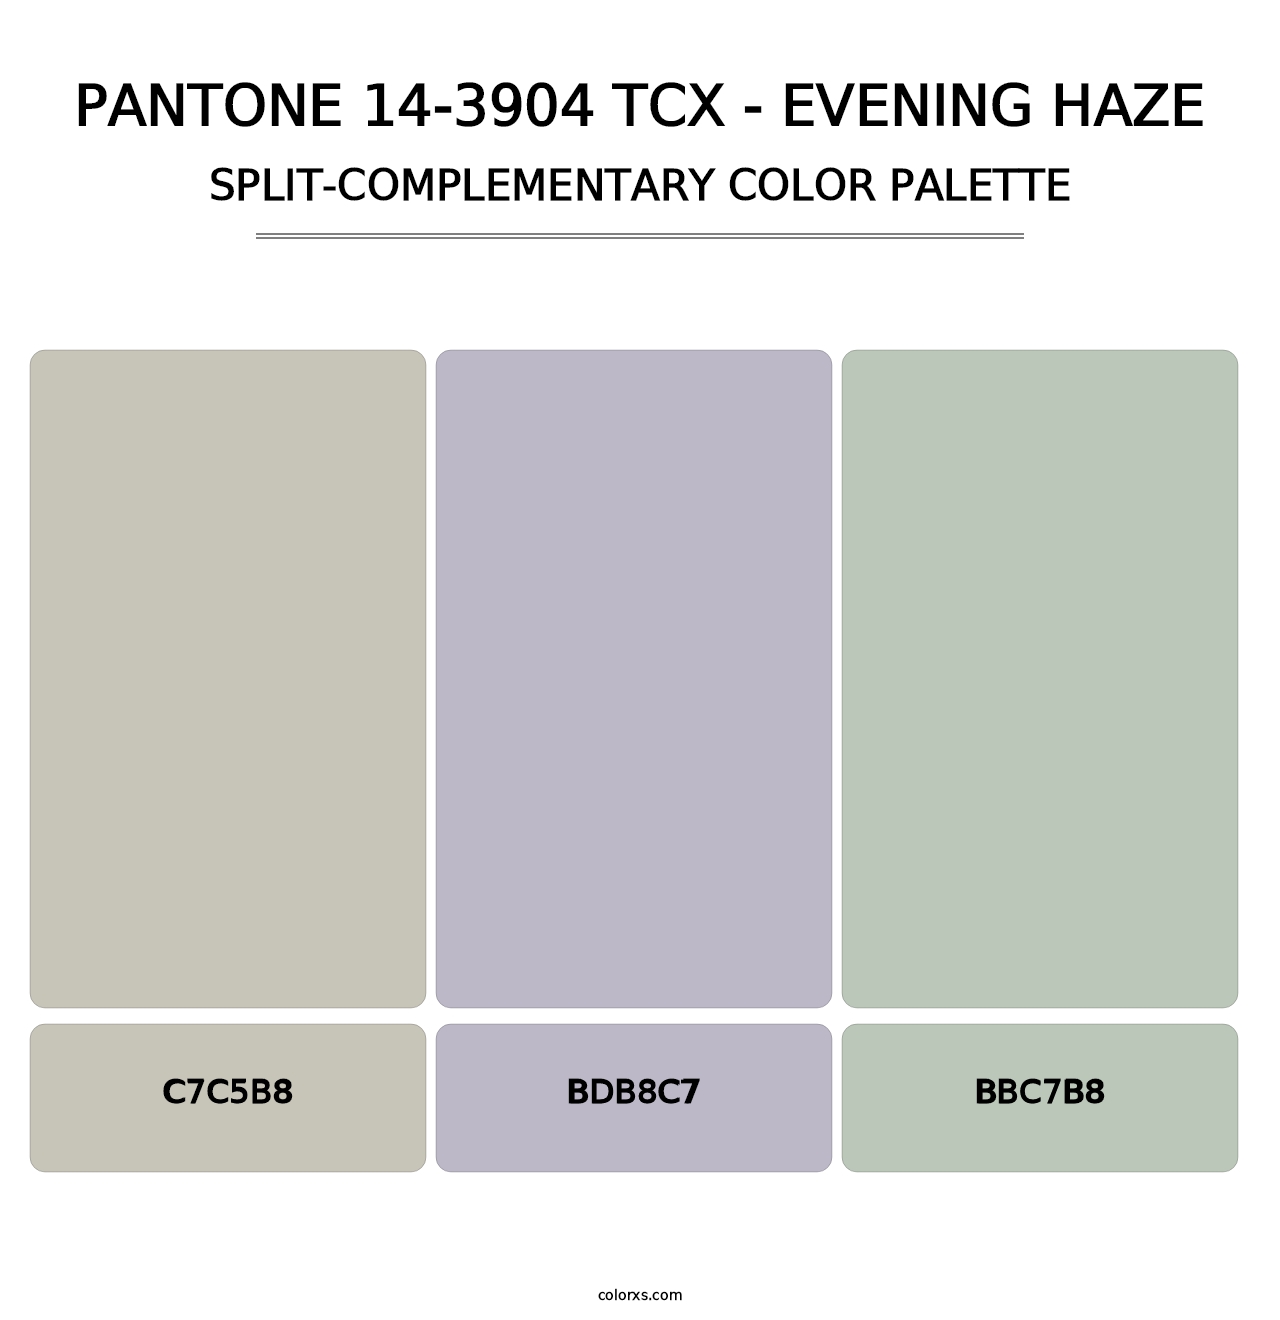 PANTONE 14-3904 TCX - Evening Haze - Split-Complementary Color Palette